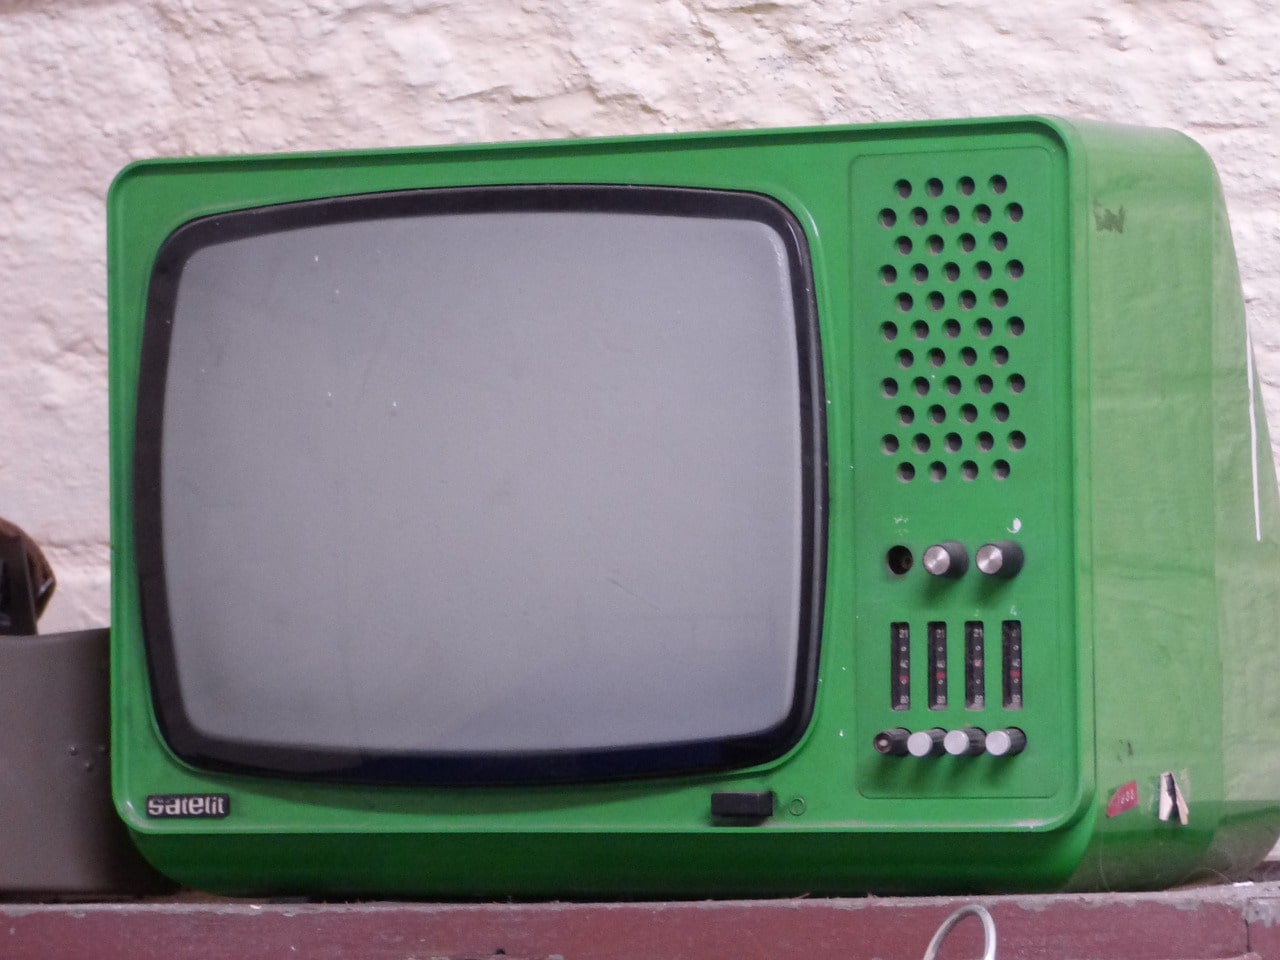 초록색 tv가 책상위에 있는 사진